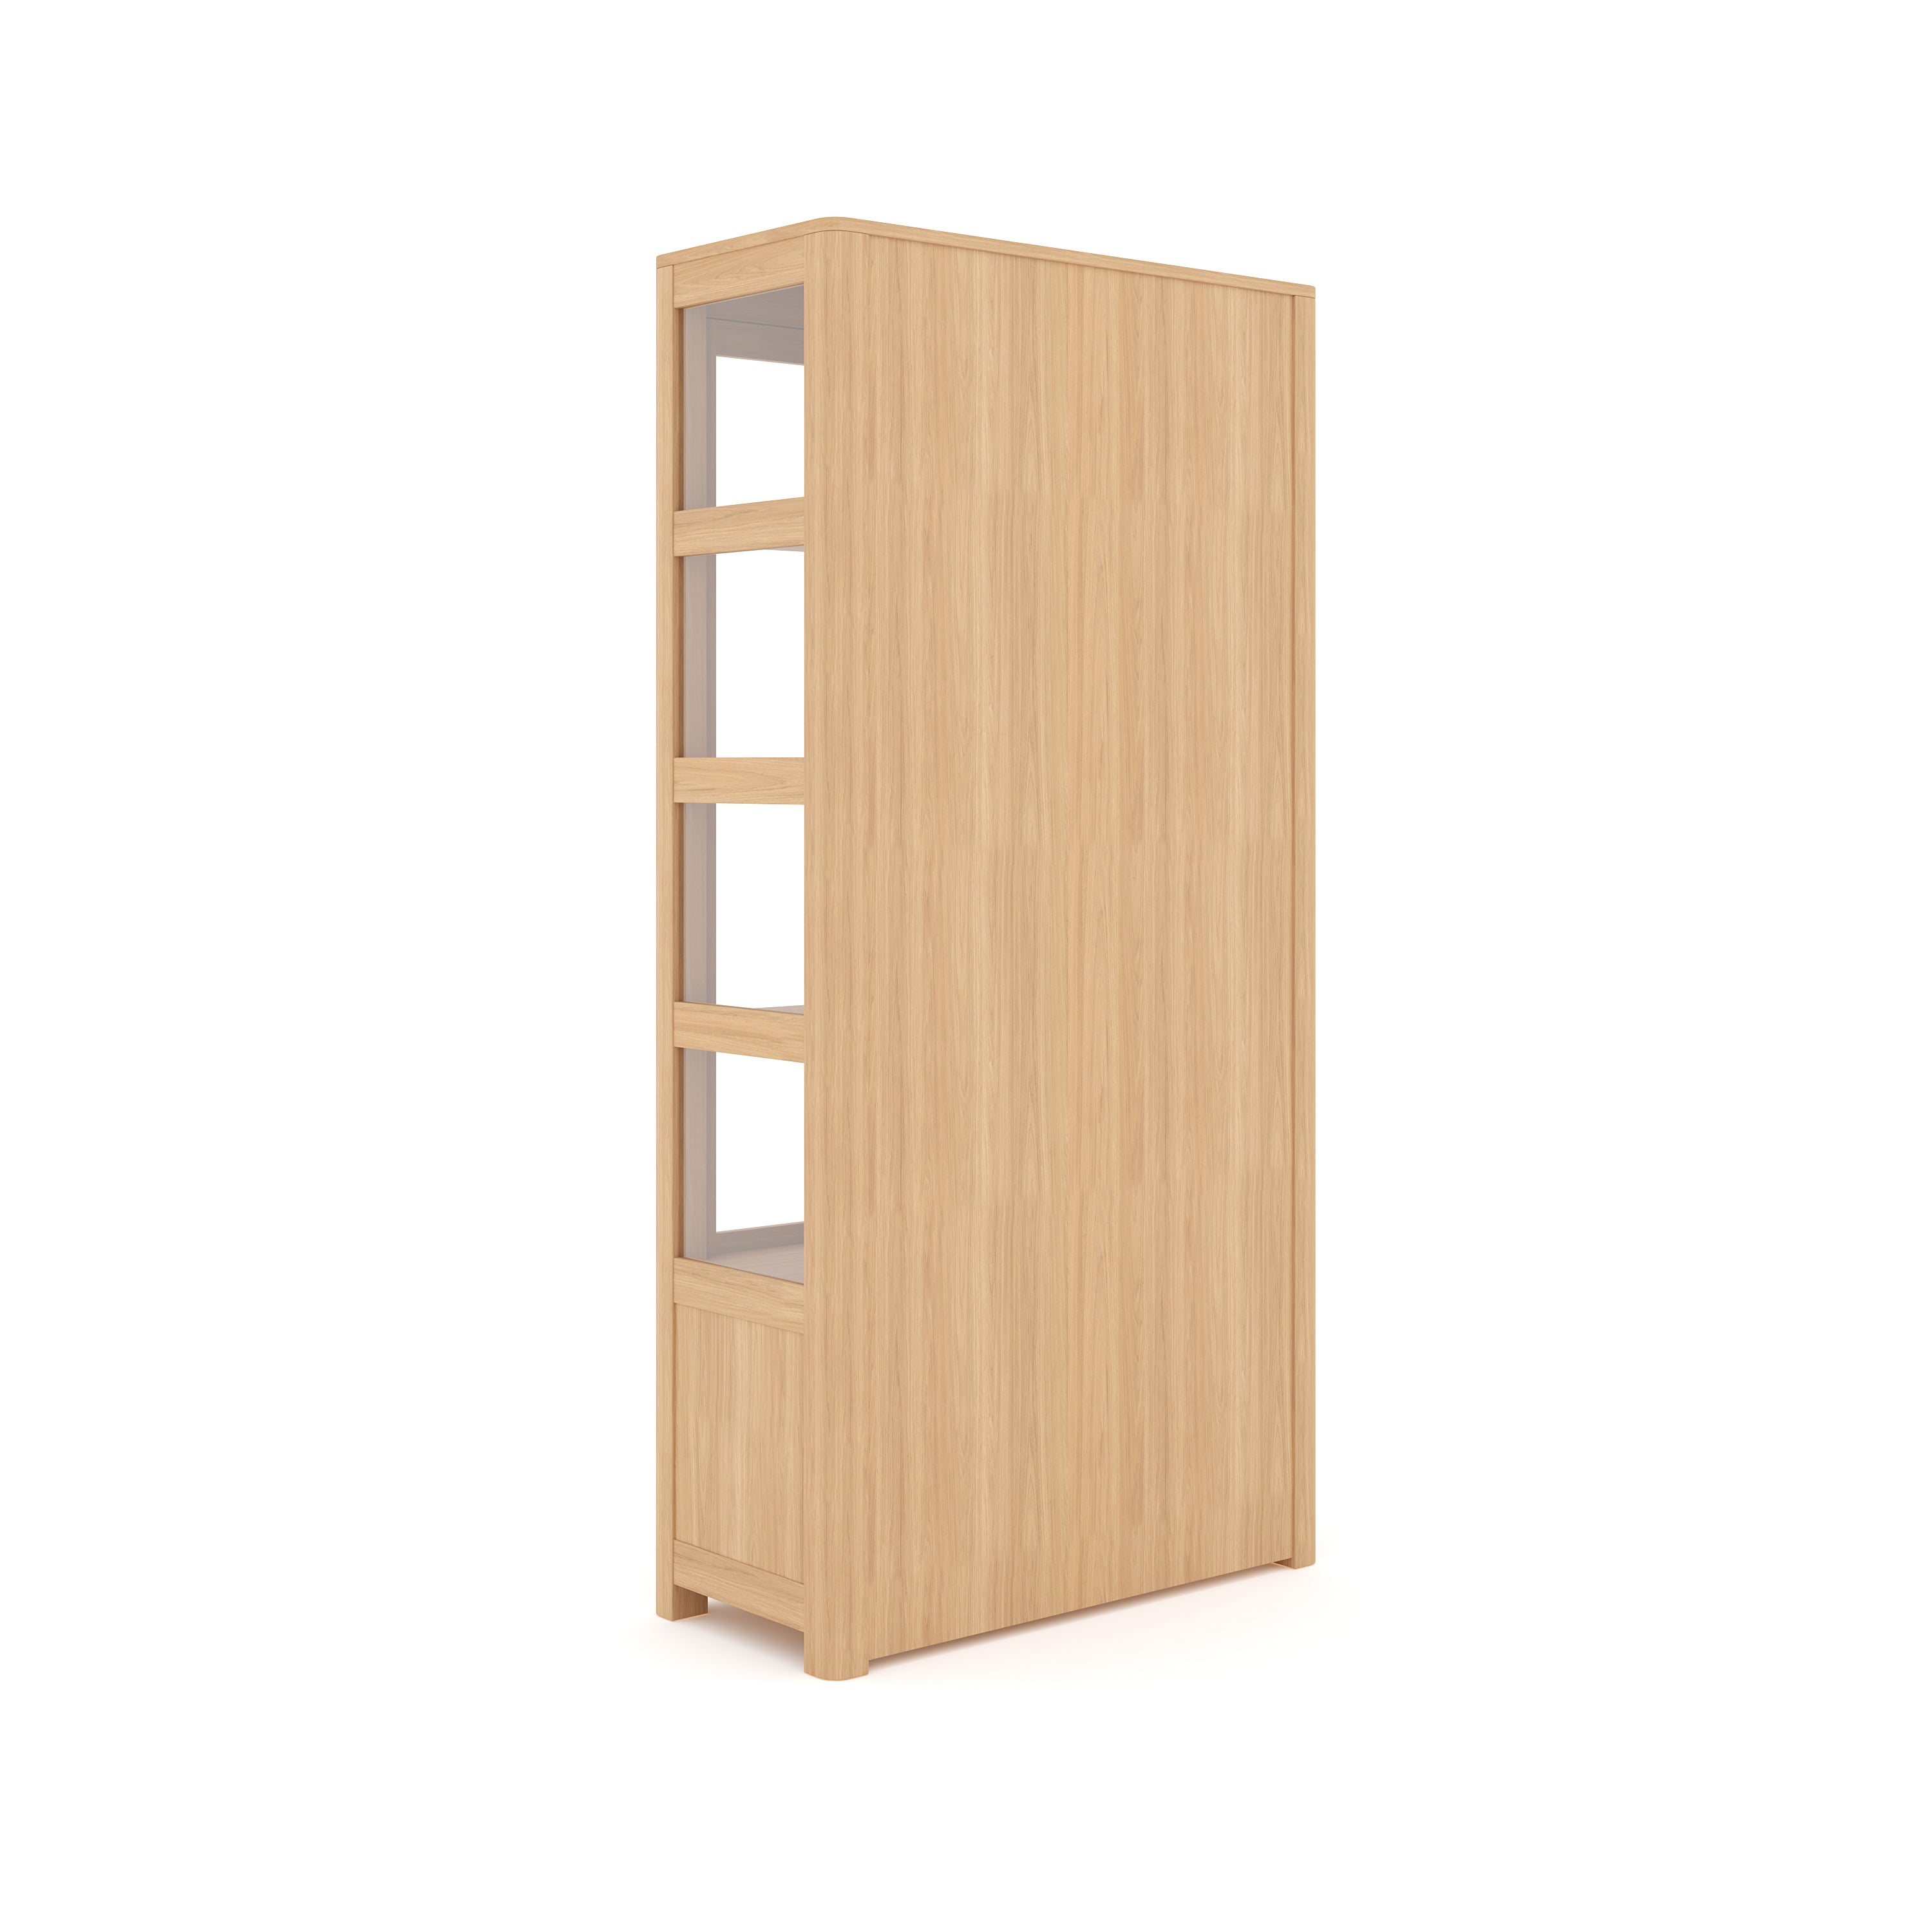 Glass Door Wooden Almirah Storage Cabinet